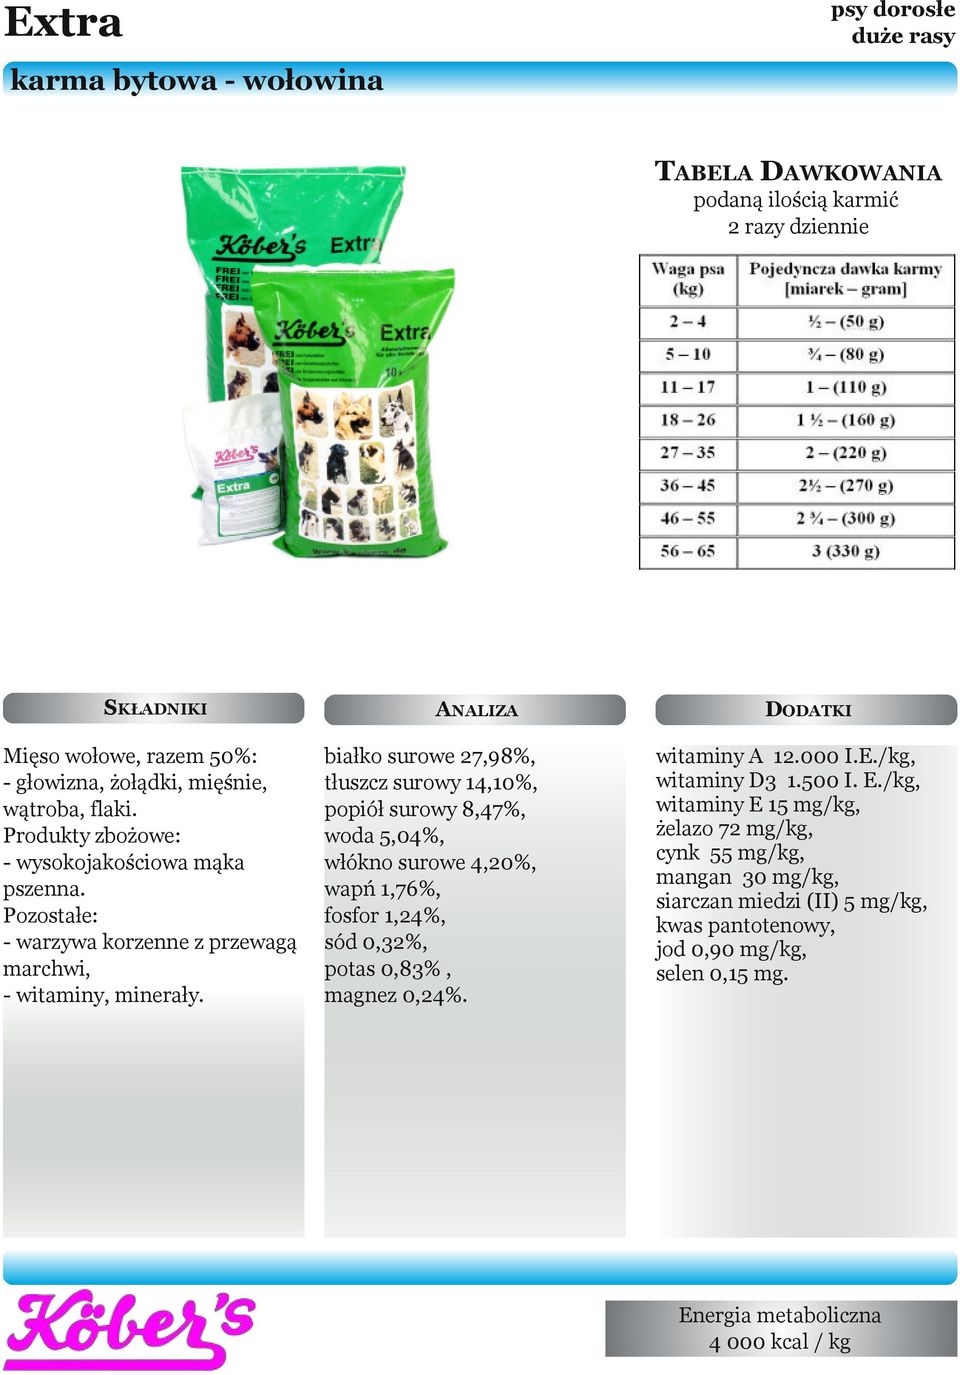 ANALIZA białko surowe 27,98%, tłuszcz surowy 14,10%, popiół surowy 8,47%, woda 5,04%, włókno surowe 4,20%, wapń 1,76%, fosfor 1,24%, sód 0,32%, potas 0,83%, magnez 0,24%.